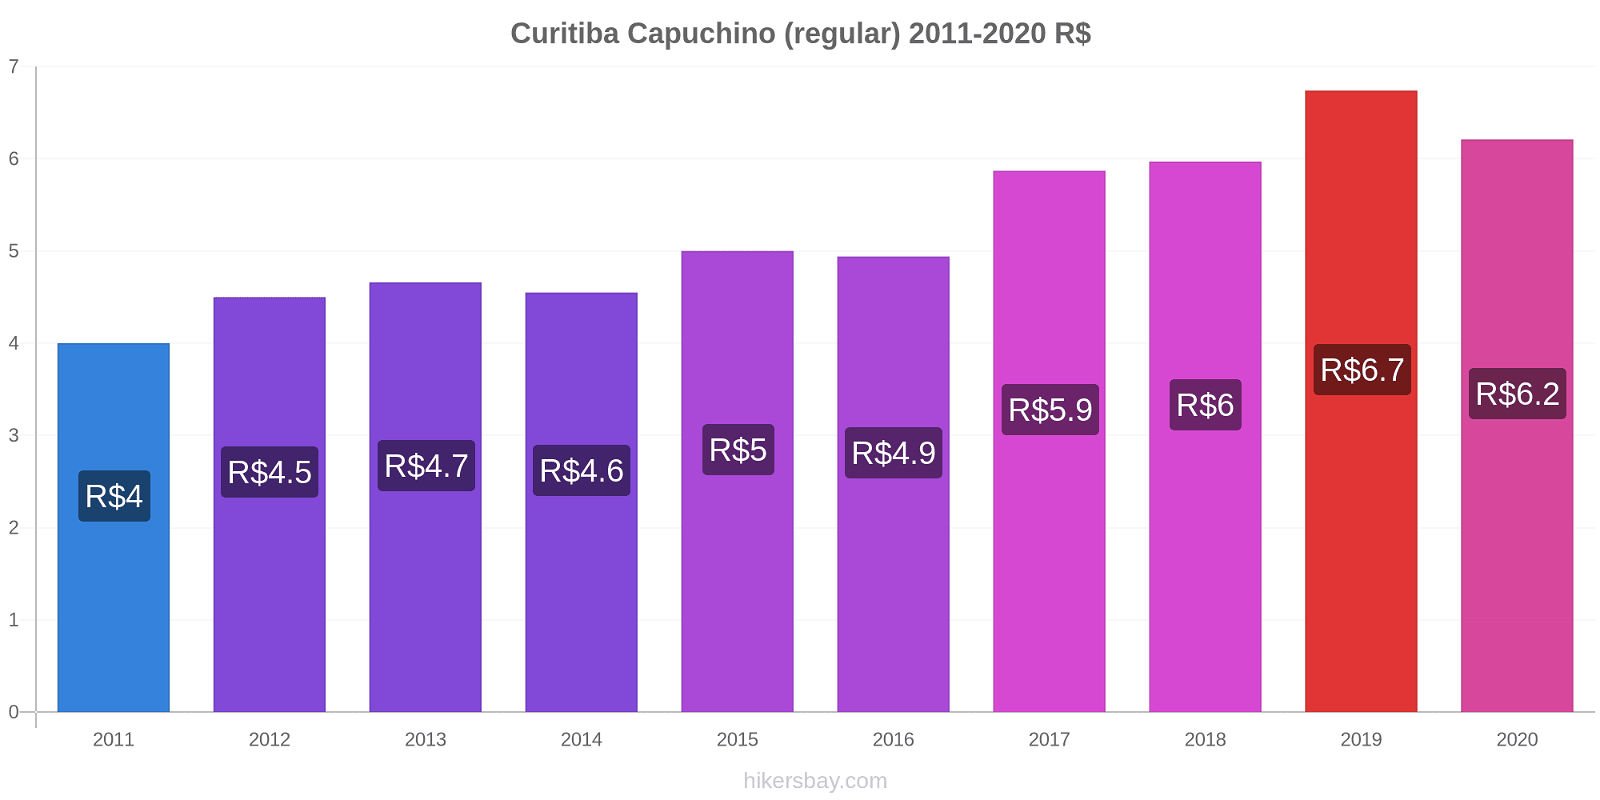 Curitiba cambios de precios Capuchino (regular) hikersbay.com